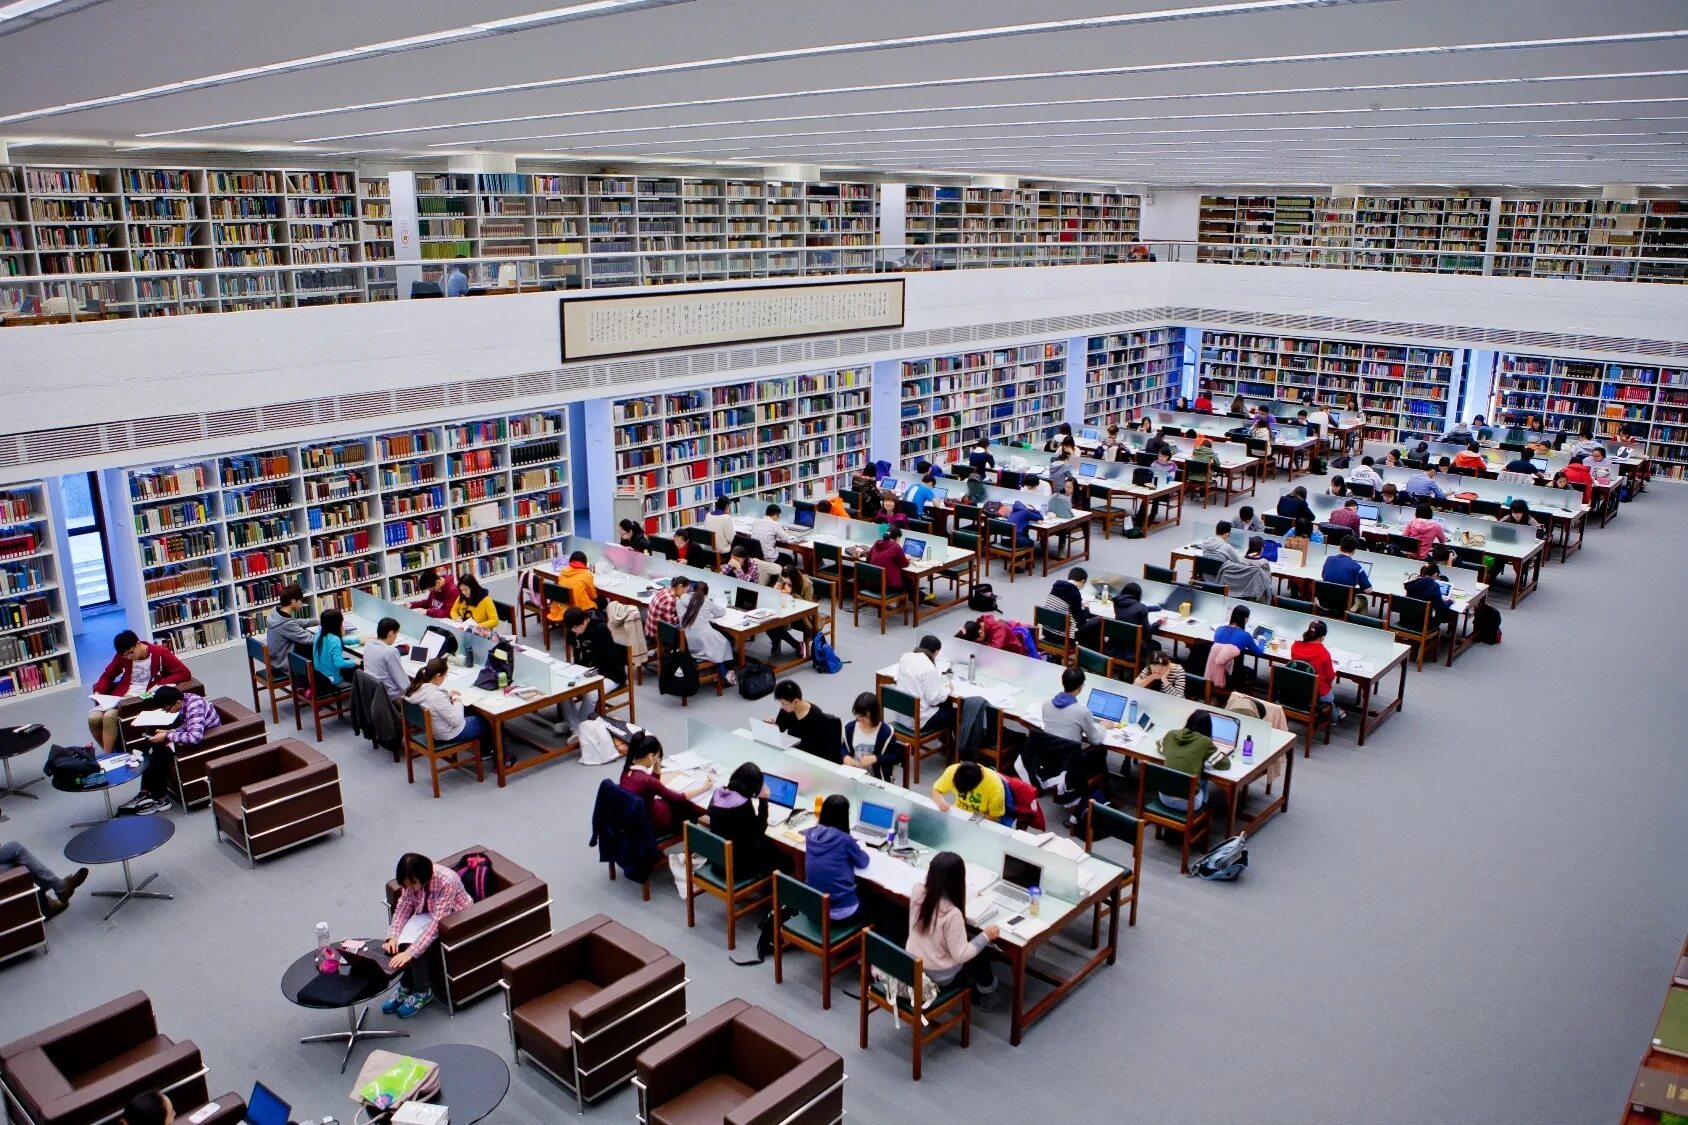 Стэнфорд университет библиотека. Принстон университет библиотека. Библиотека университета Цинхуа в Пекине;. Бинхай университет.